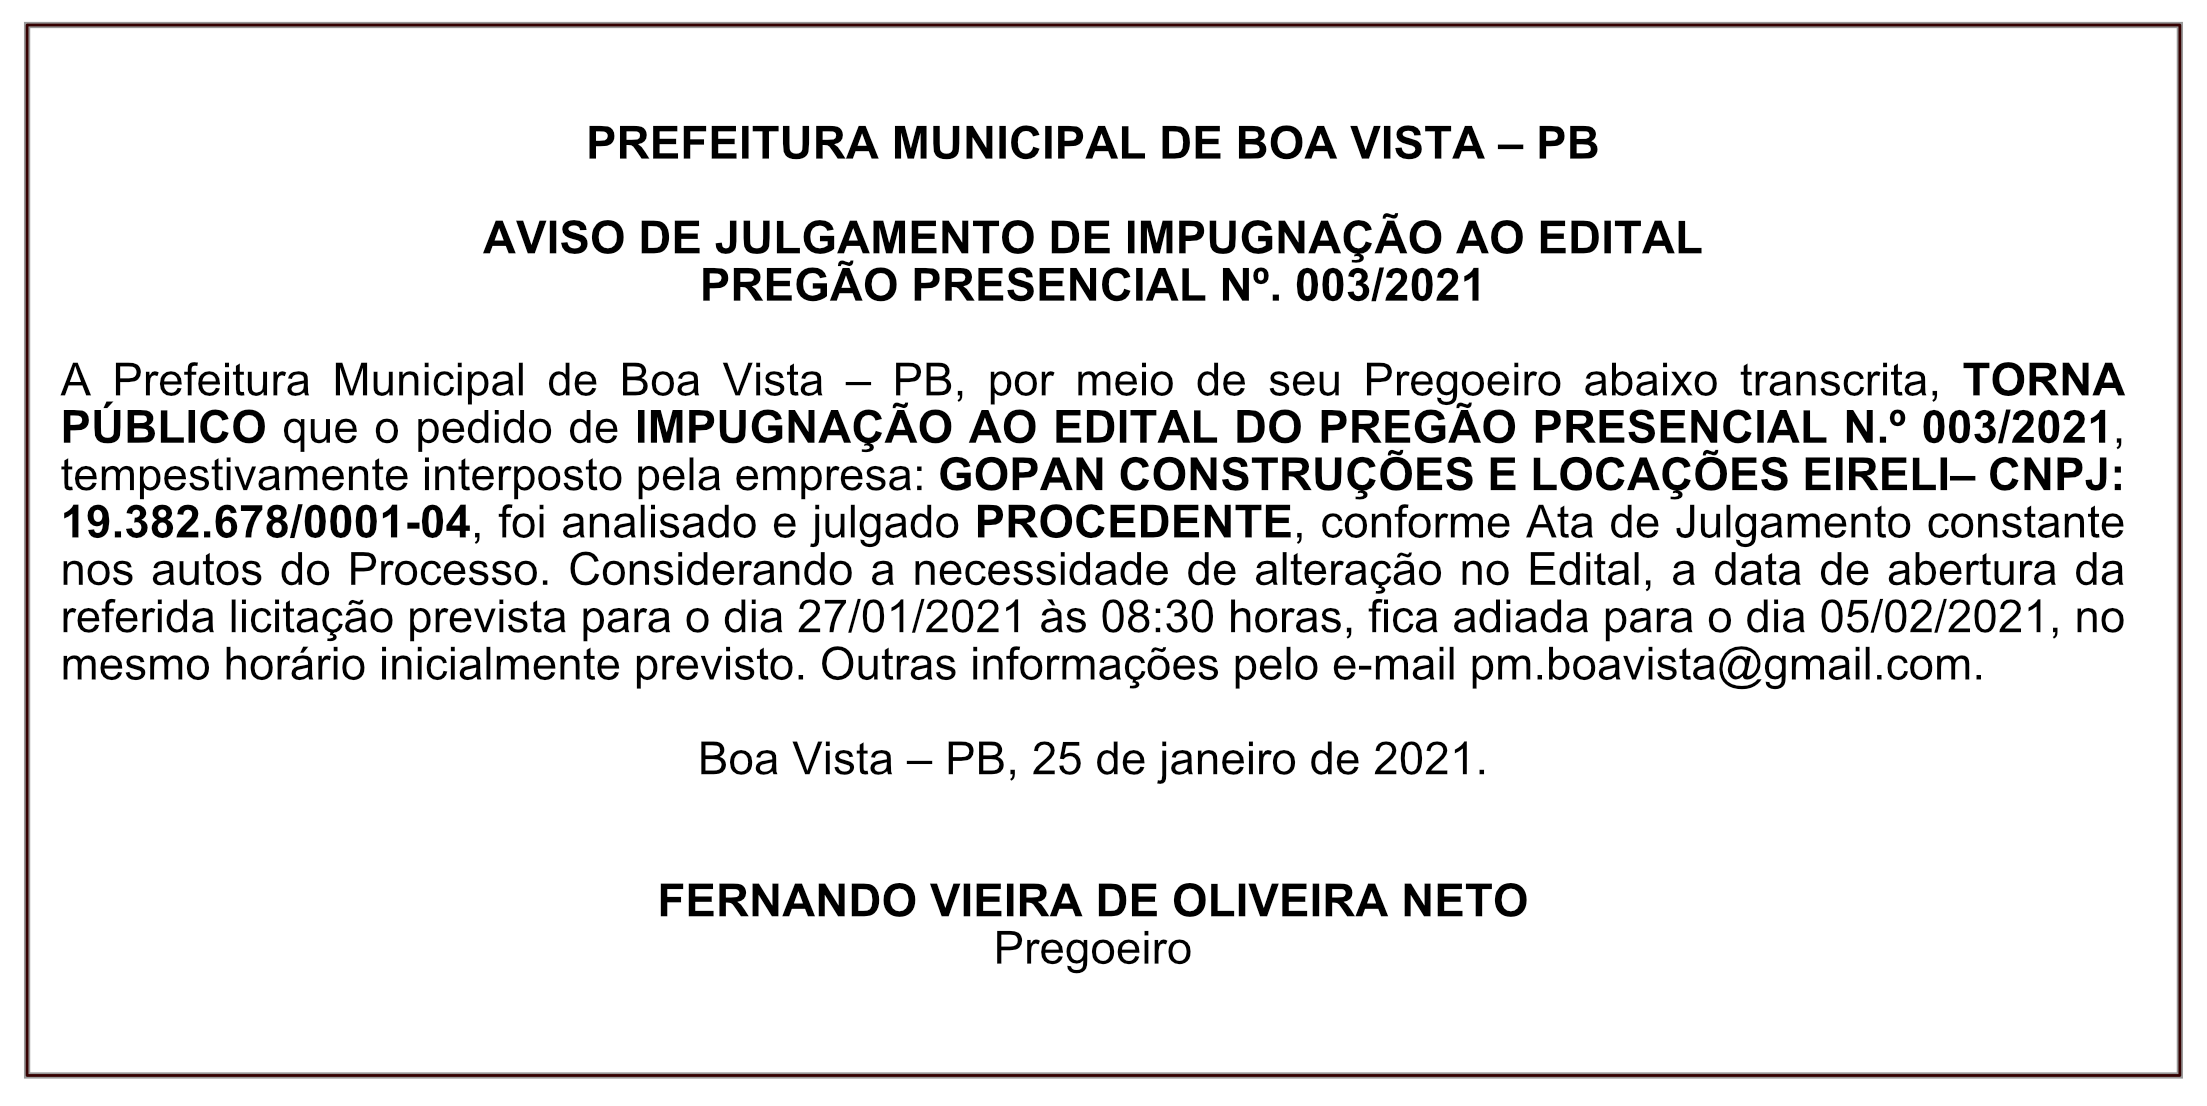 PREFEITURA MUNICIPAL DE BOA VISTA – AVISO DE JULGAMENTO DE IMPUGNAÇÃO AO EDITAL – PREGÃO PRESENCIAL Nº 003/2021